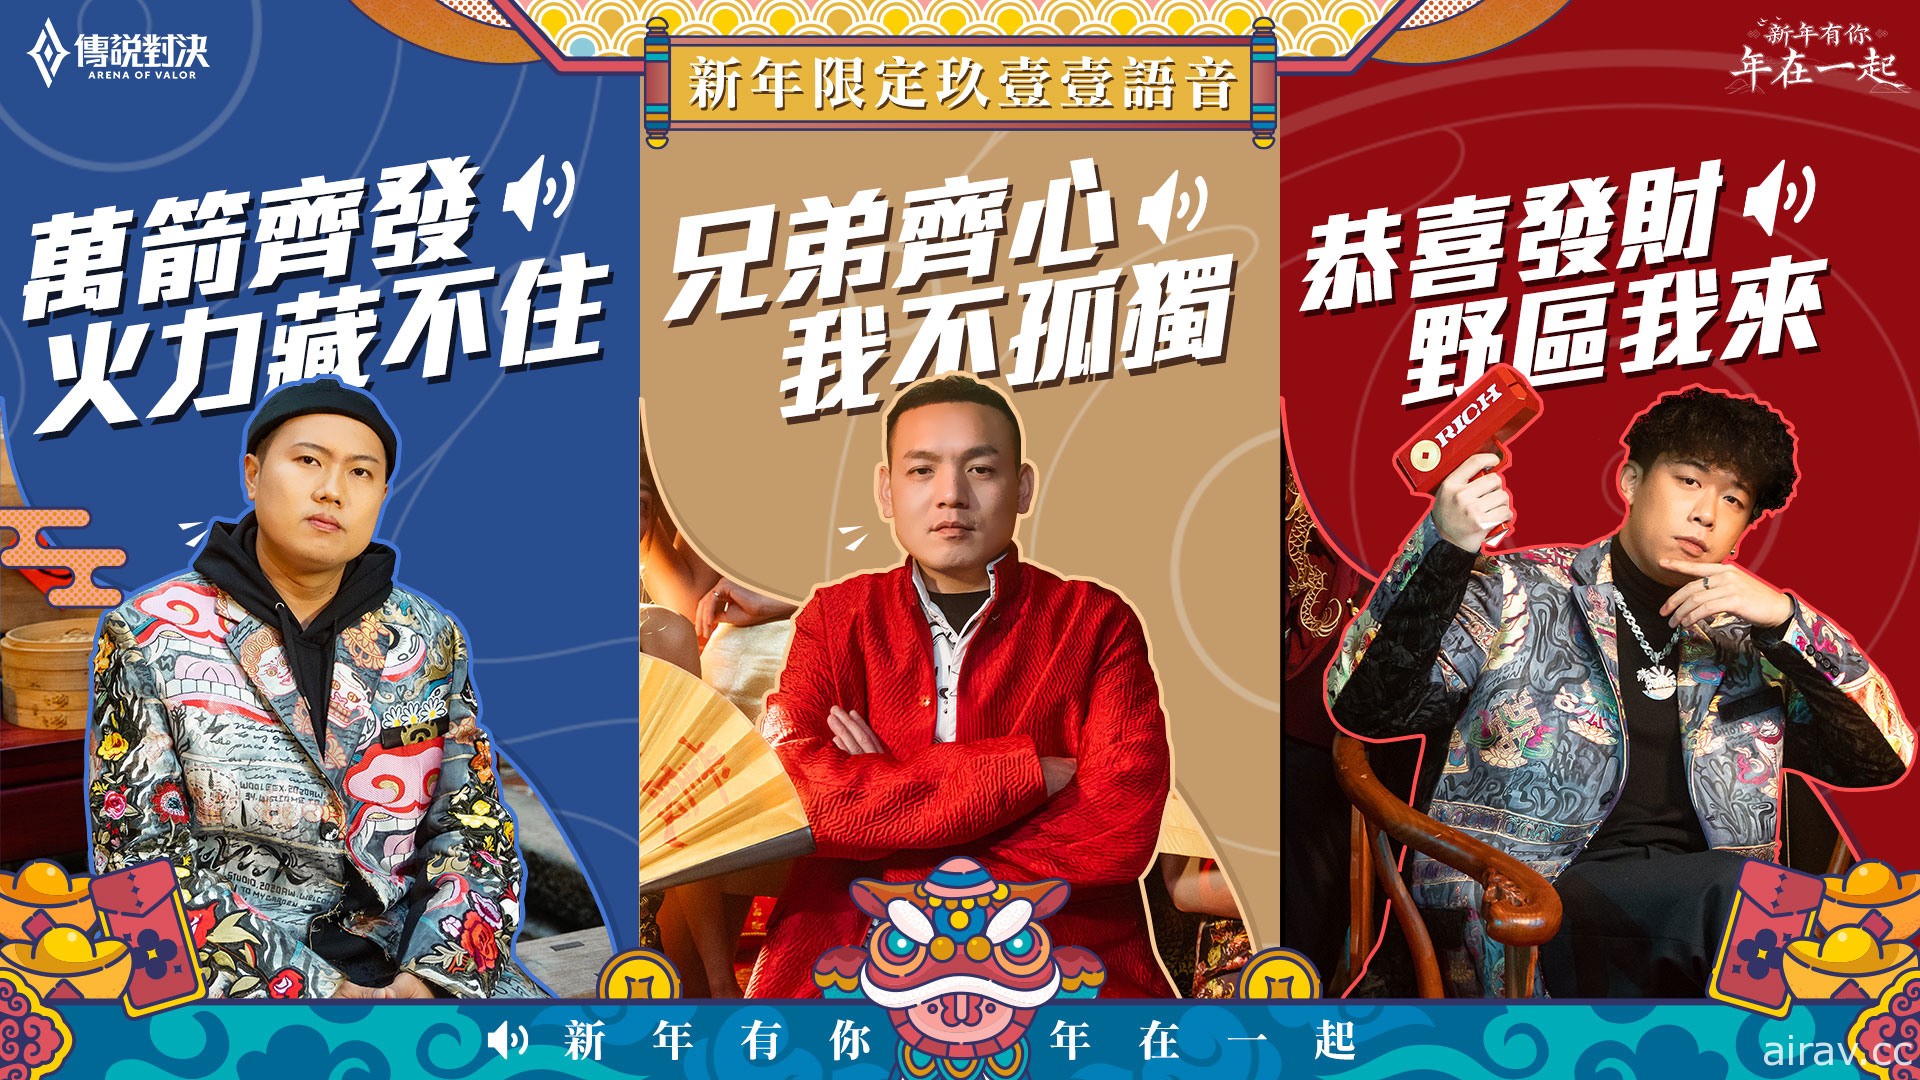 《传说对决》携手“玖壹壹”推出新年主题曲“战场传说” 陪伴玩家度过新年